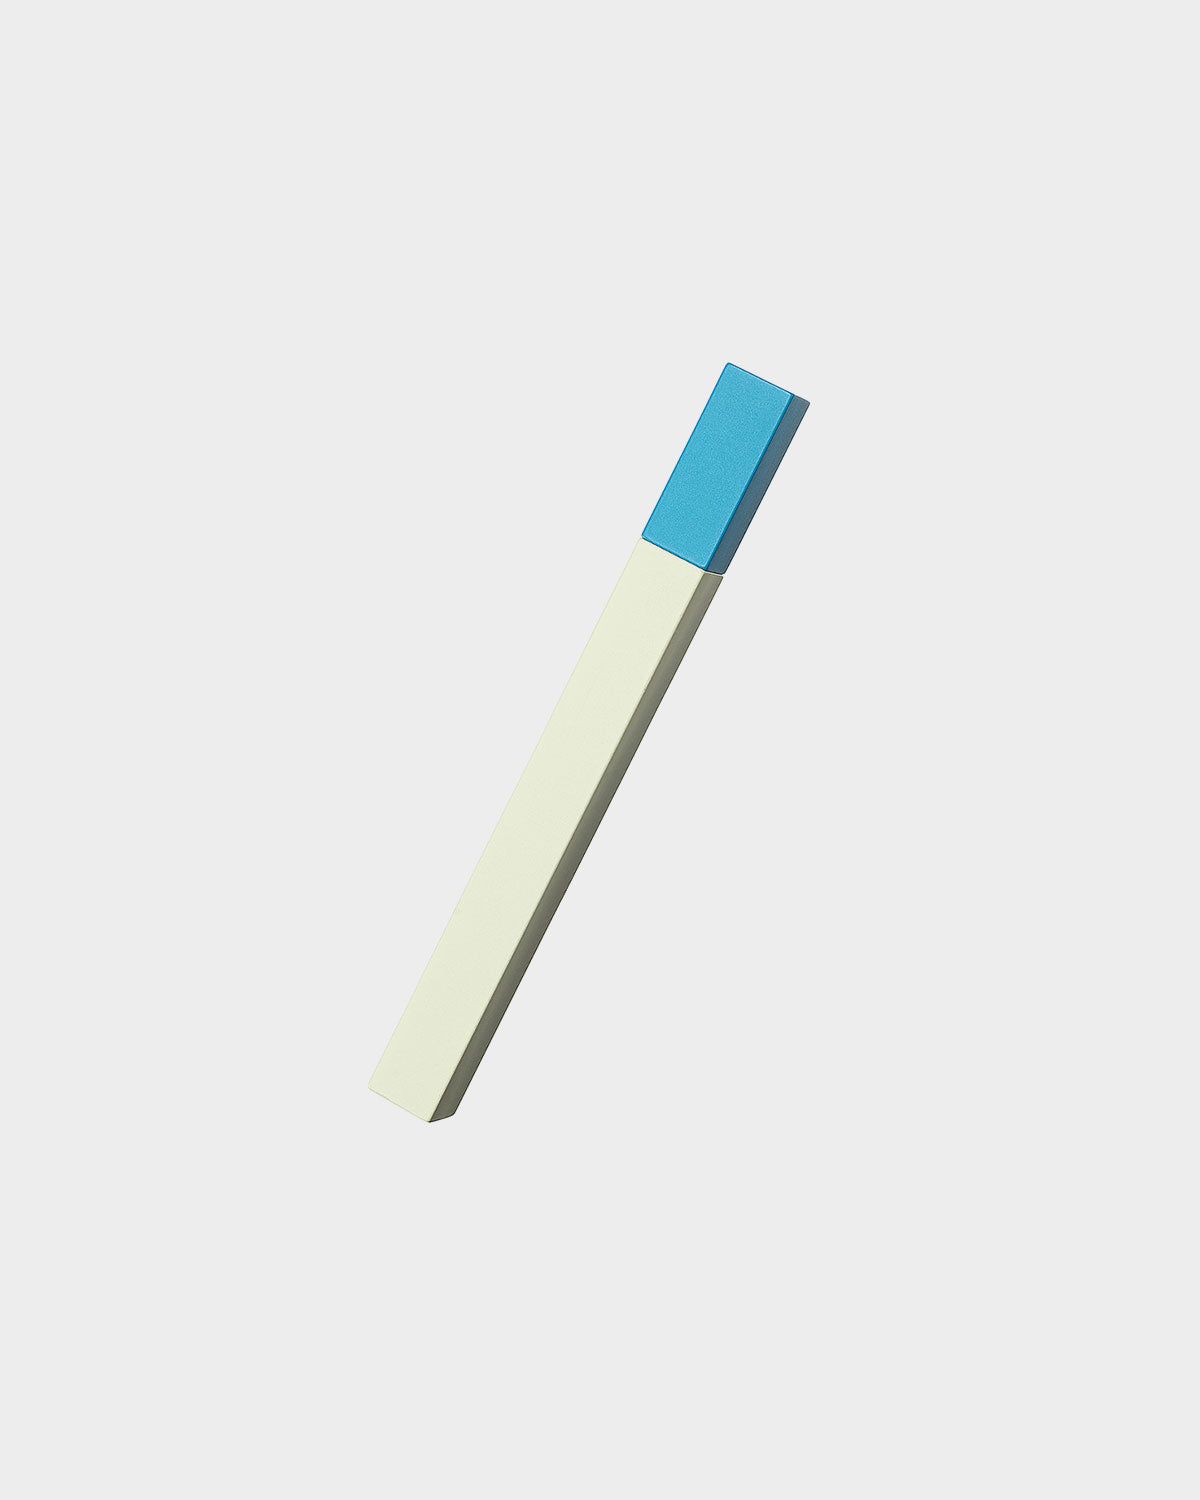 Queue Lighter - White/Turquoise